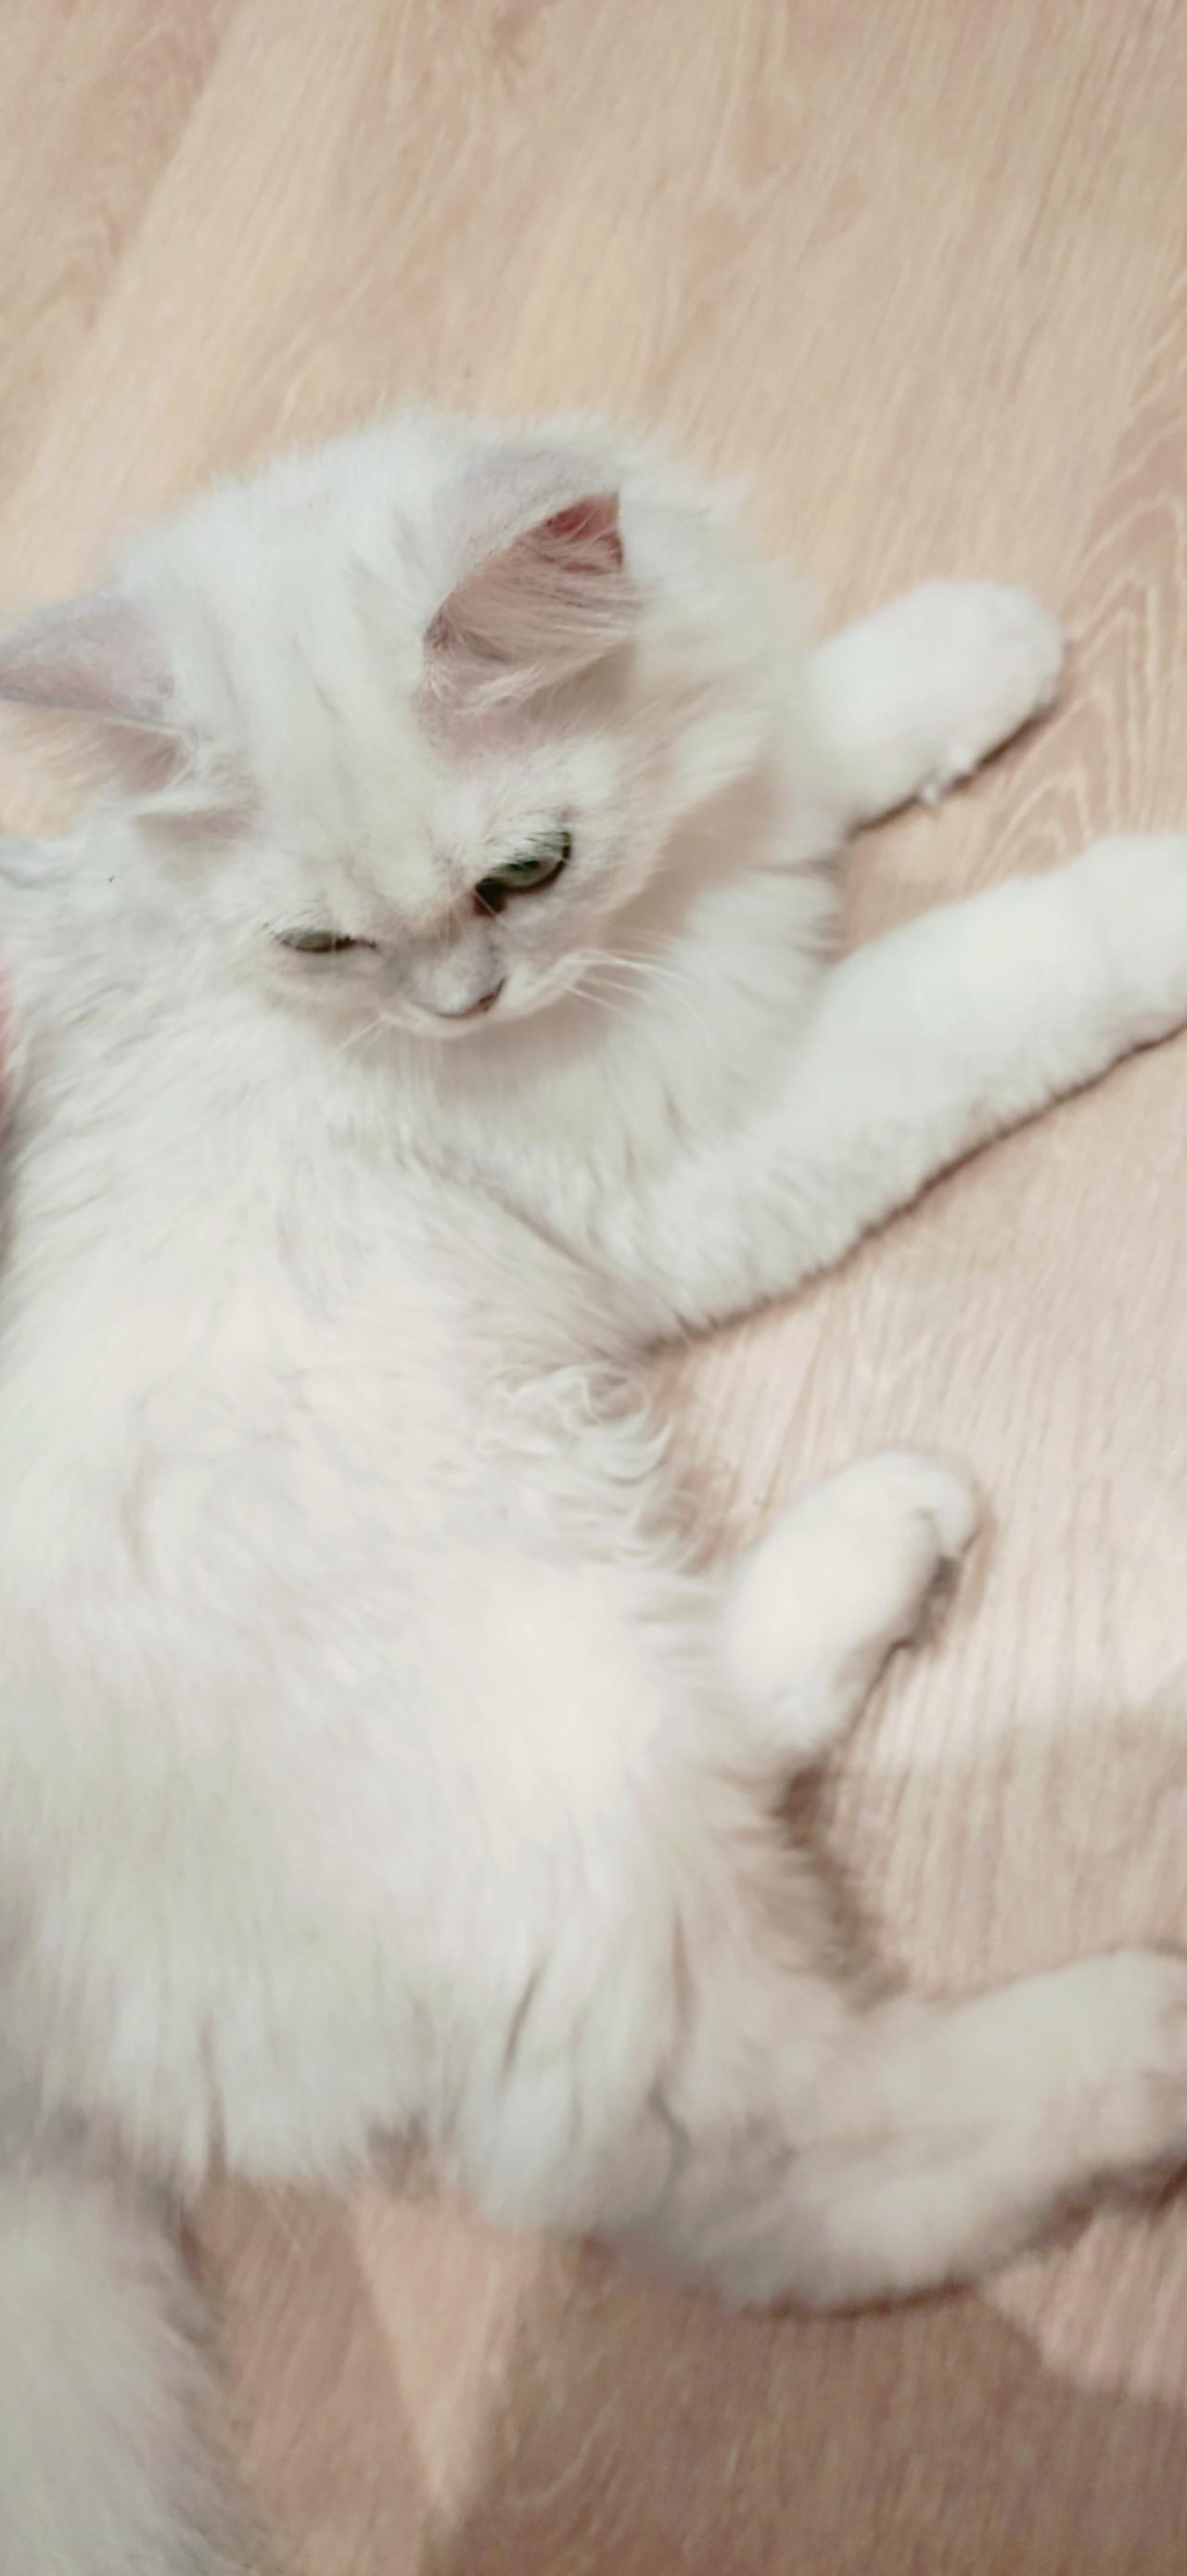 趴在木地板上的白色猫咪 竖屏手机壁纸